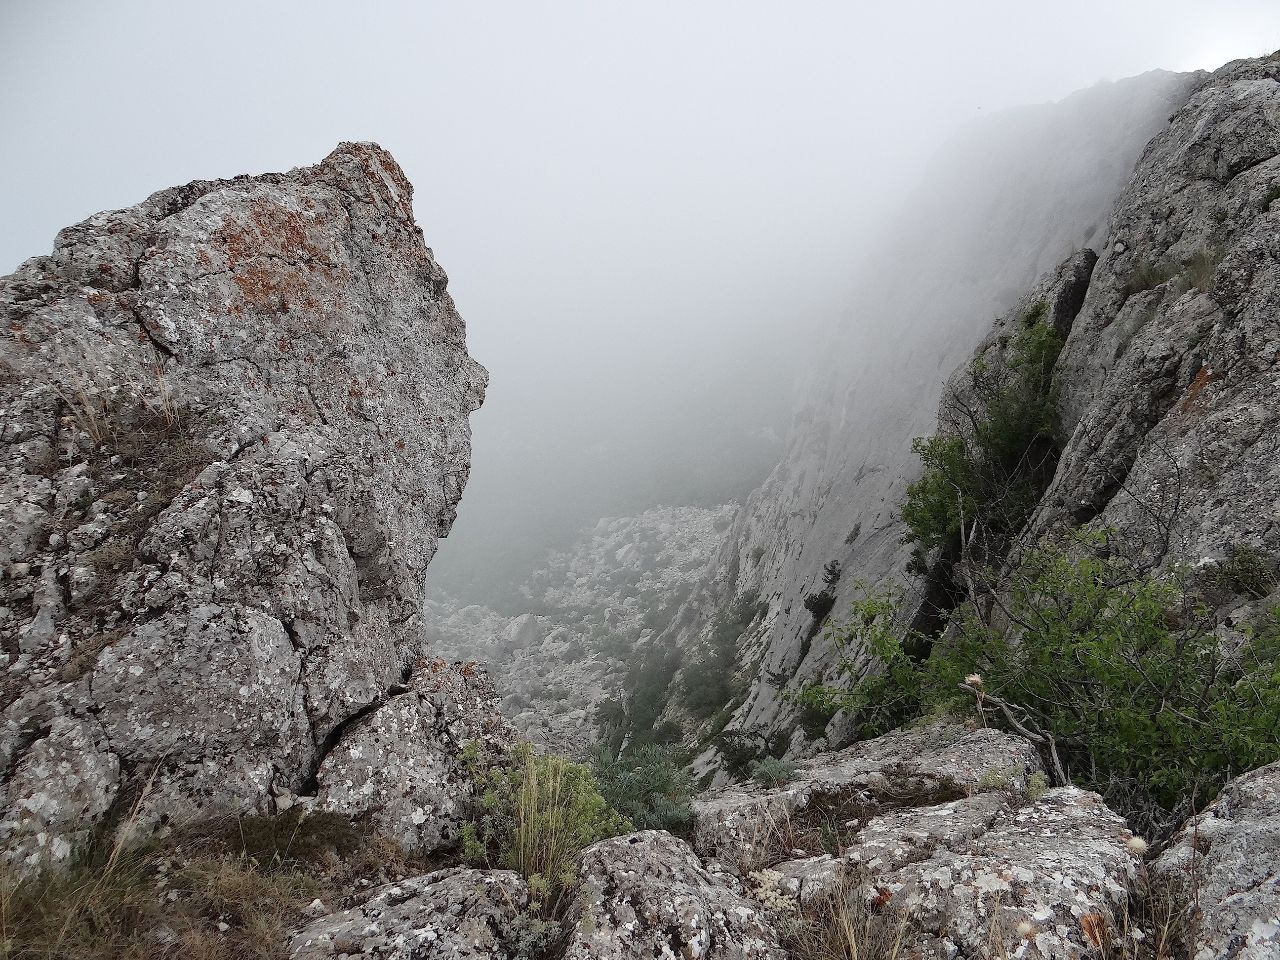 начинает туман просеиваться - открывается некоторые виды на долину - Крым 2019. часть 2. День второй